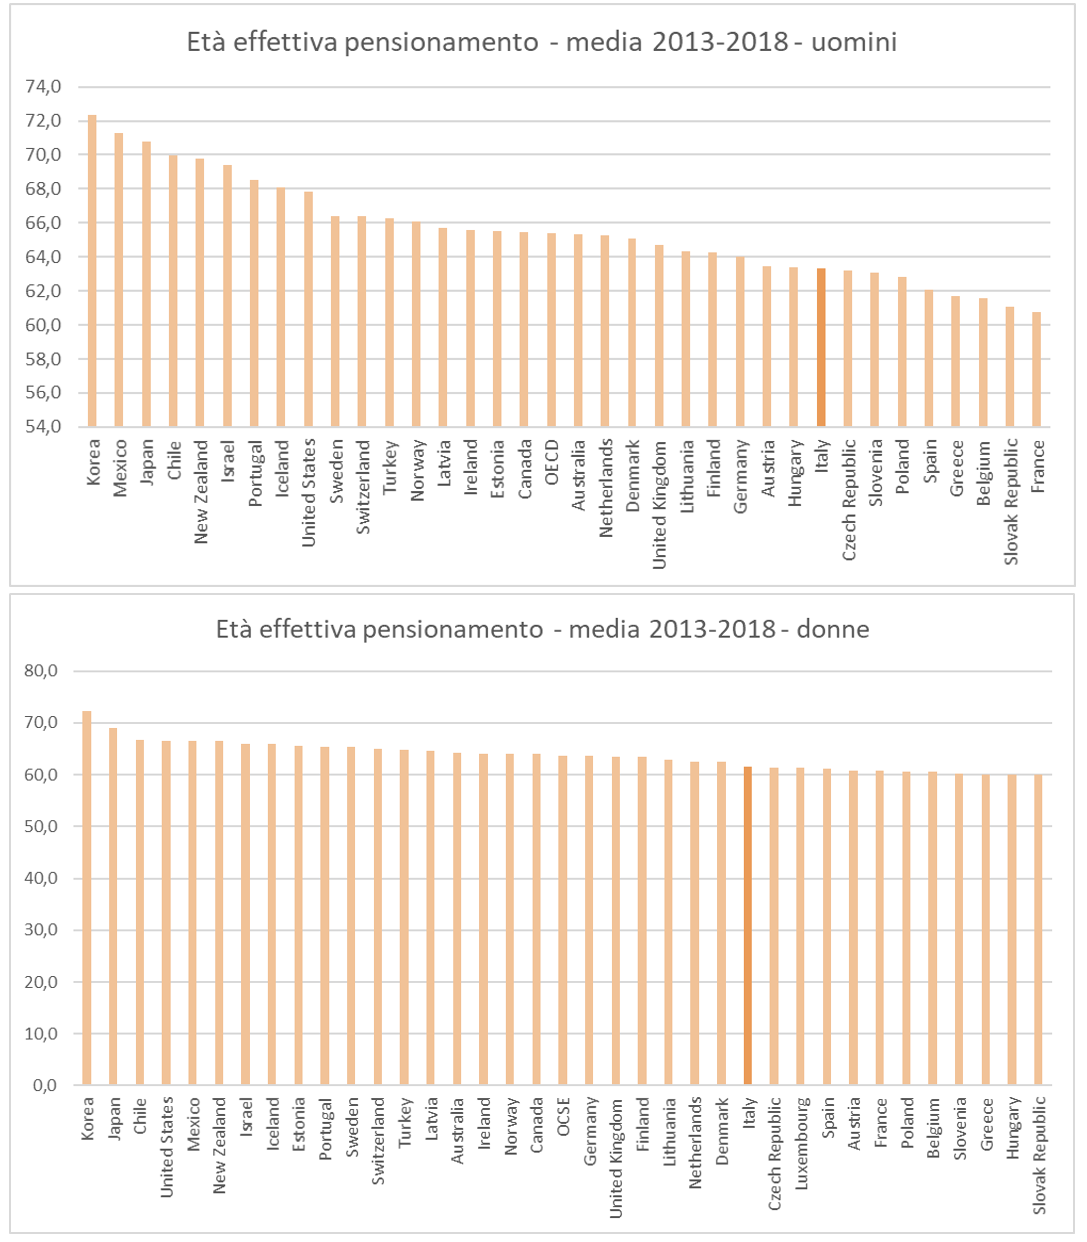 Figura 1 - L'etÃ  effettiva di pensionamento nei Paesi dell'area OCSE 